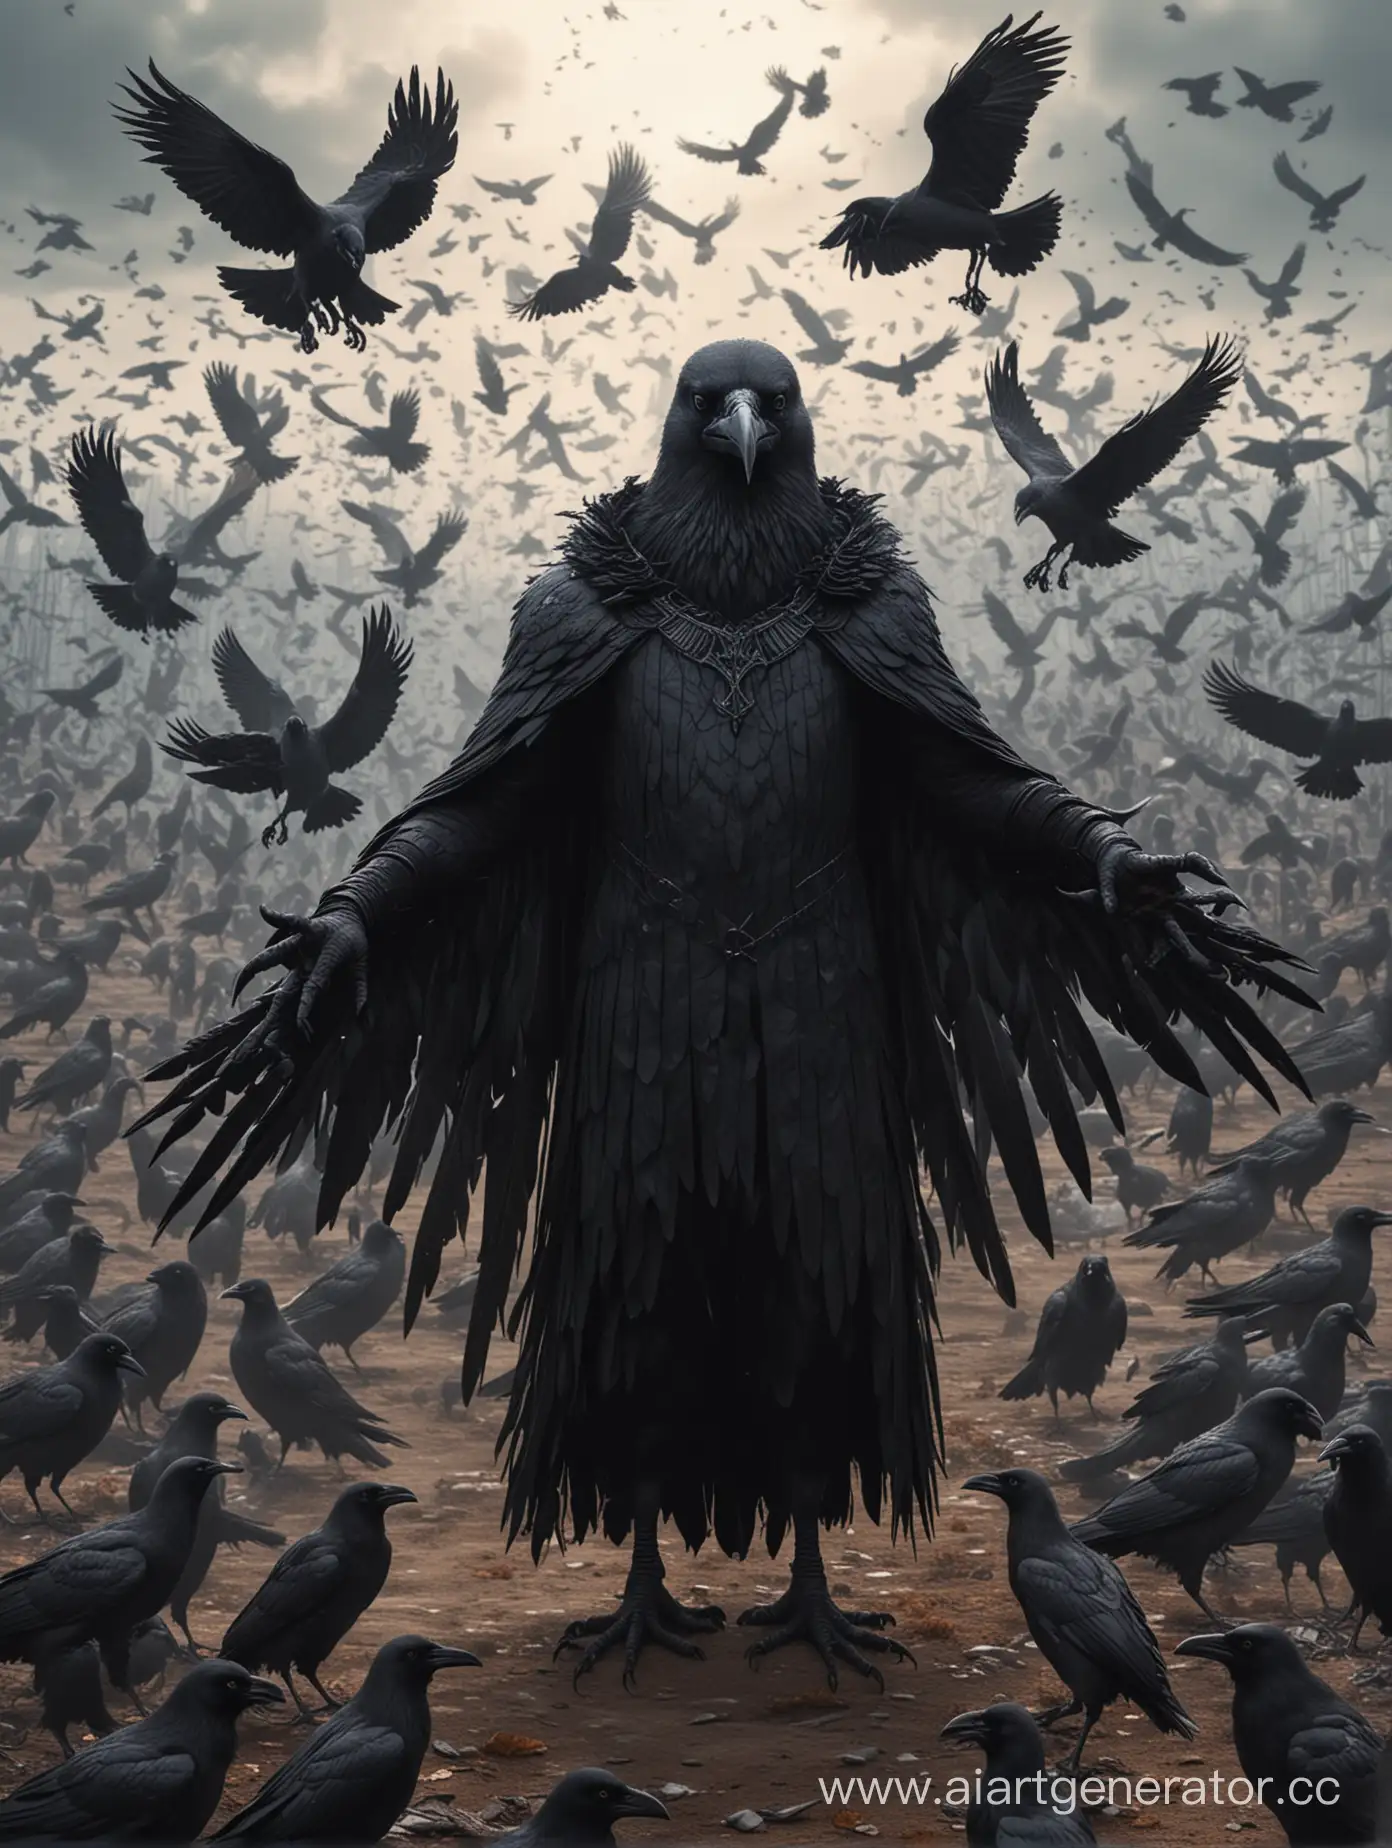 Злодей для фэнтези мира что выглядит как огромный чёрный антропоморфный ворон с крыльями вместо рук, окружённый воронами и смотрящий в камеру